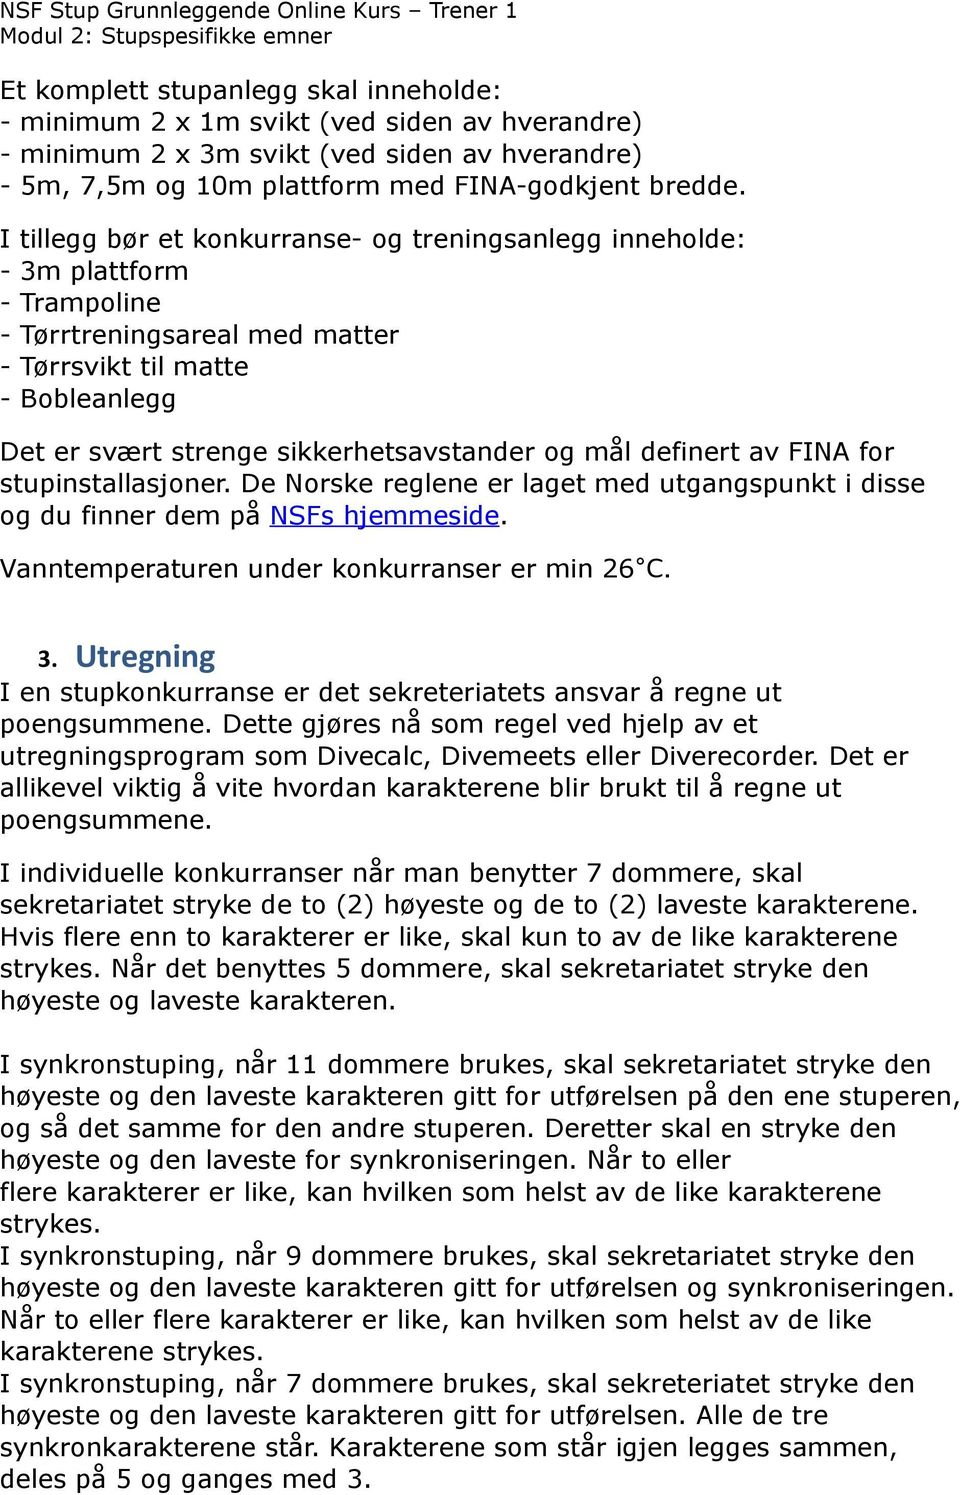 mål definert av FINA for stupinstallasjoner. De Norske reglene er laget med utgangspunkt i disse og du finner dem på NSFs hjemmeside. Vanntemperaturen under konkurranser er min 26 C. 3.